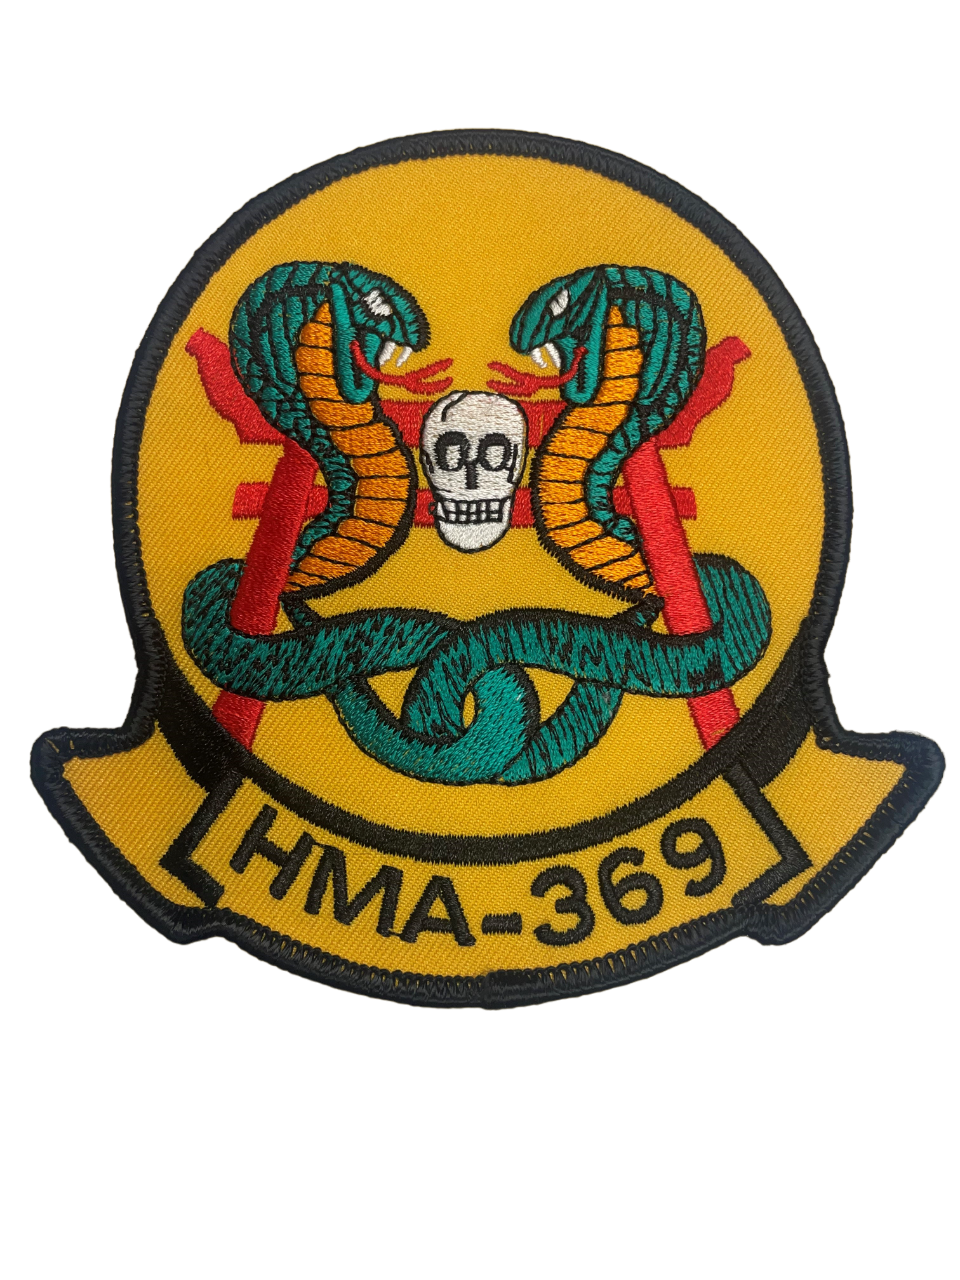 HMA-369 Squadron Patch